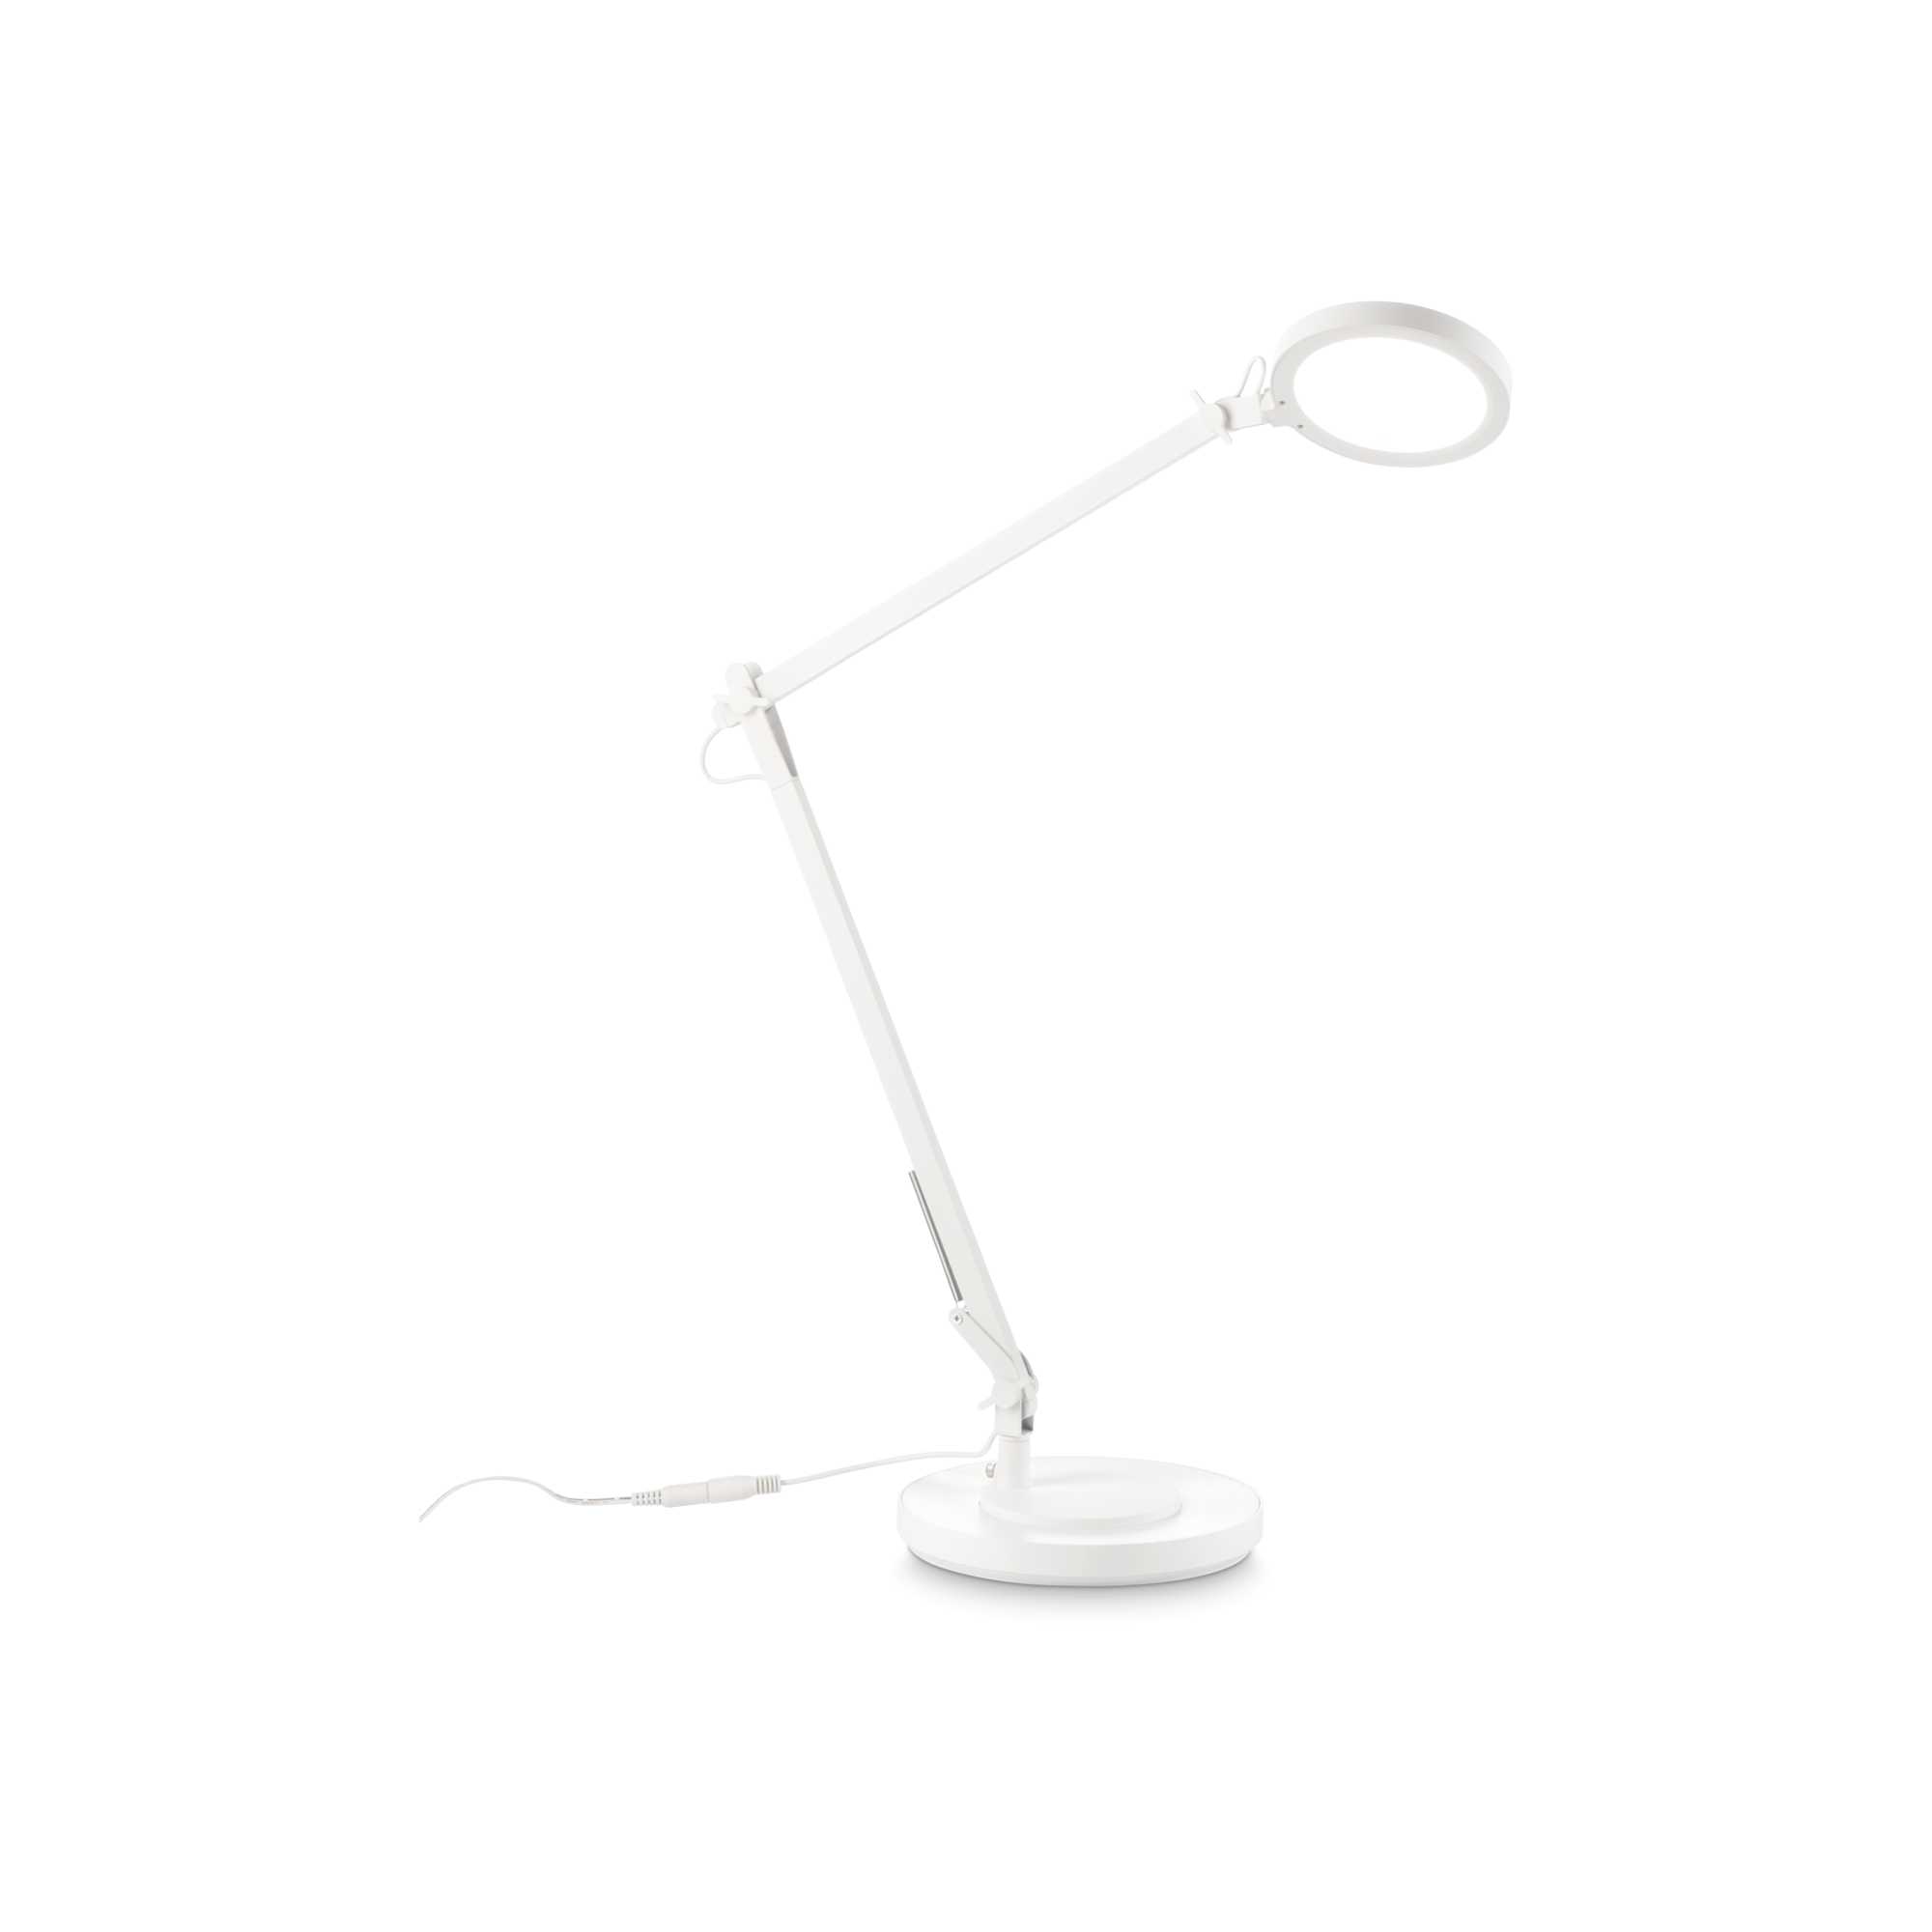 AD hotelska oprema Stolna lampa Futura tl- Bijele boje slika proizvoda